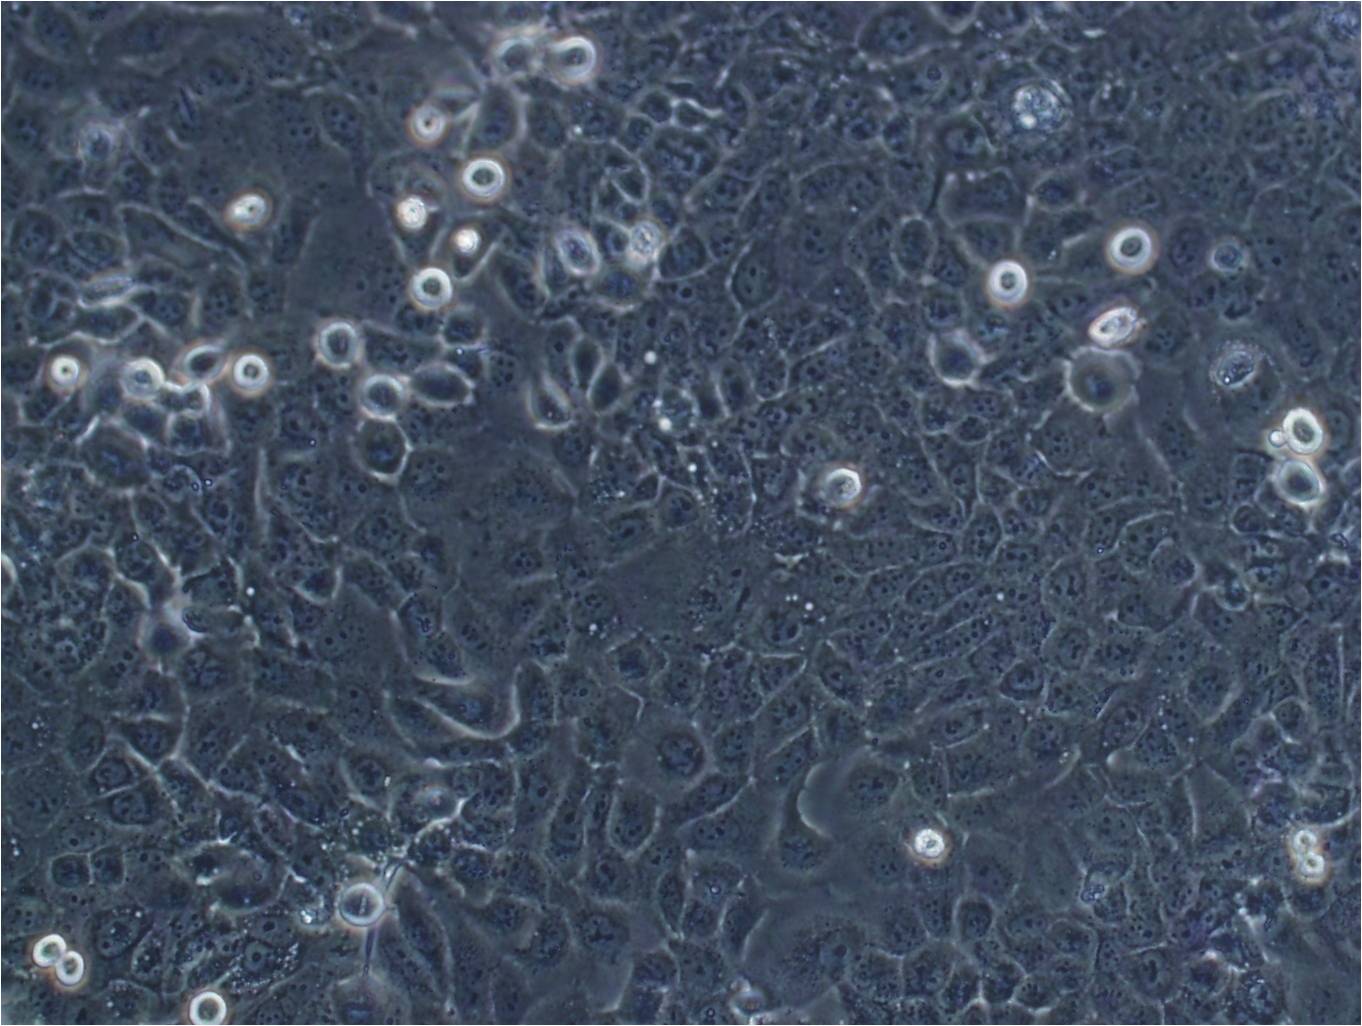 PNEC30 epithelioid cells小鼠前列腺癌细胞系,PNEC30 epithelioid cells